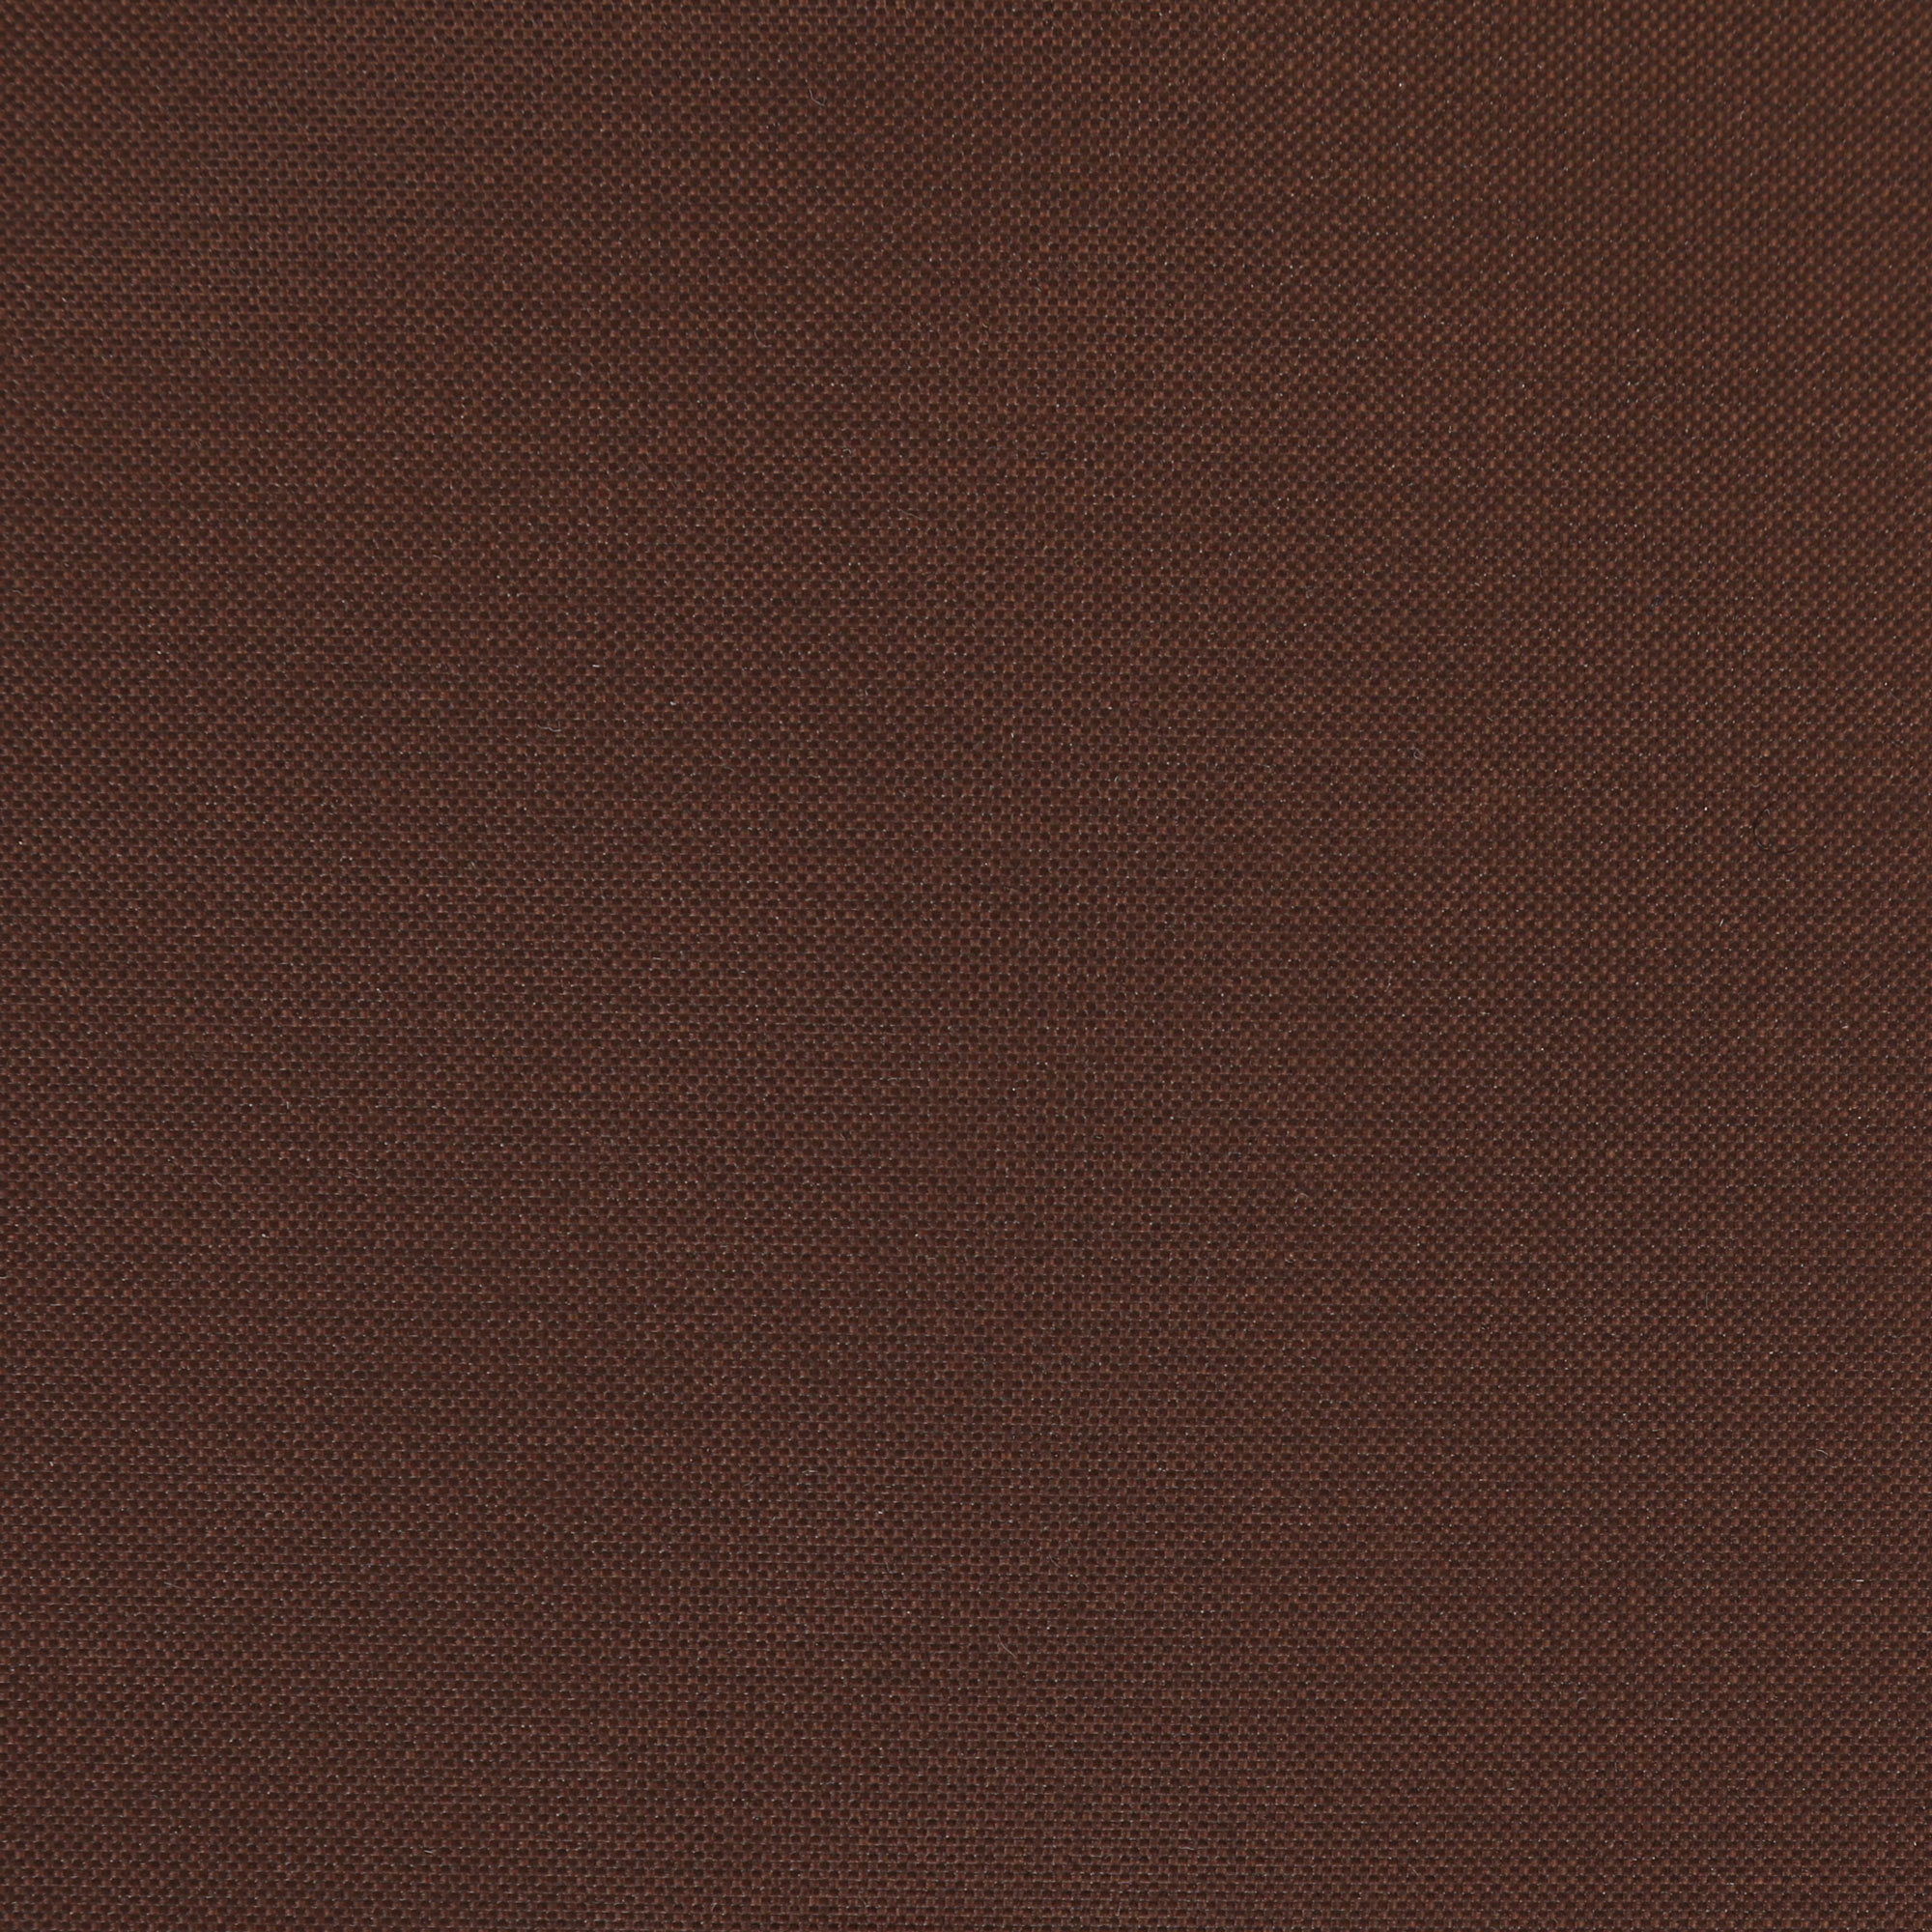 Чеxол для кресла Profgarden 110x110x65 см, цвет коричневый - фото 5